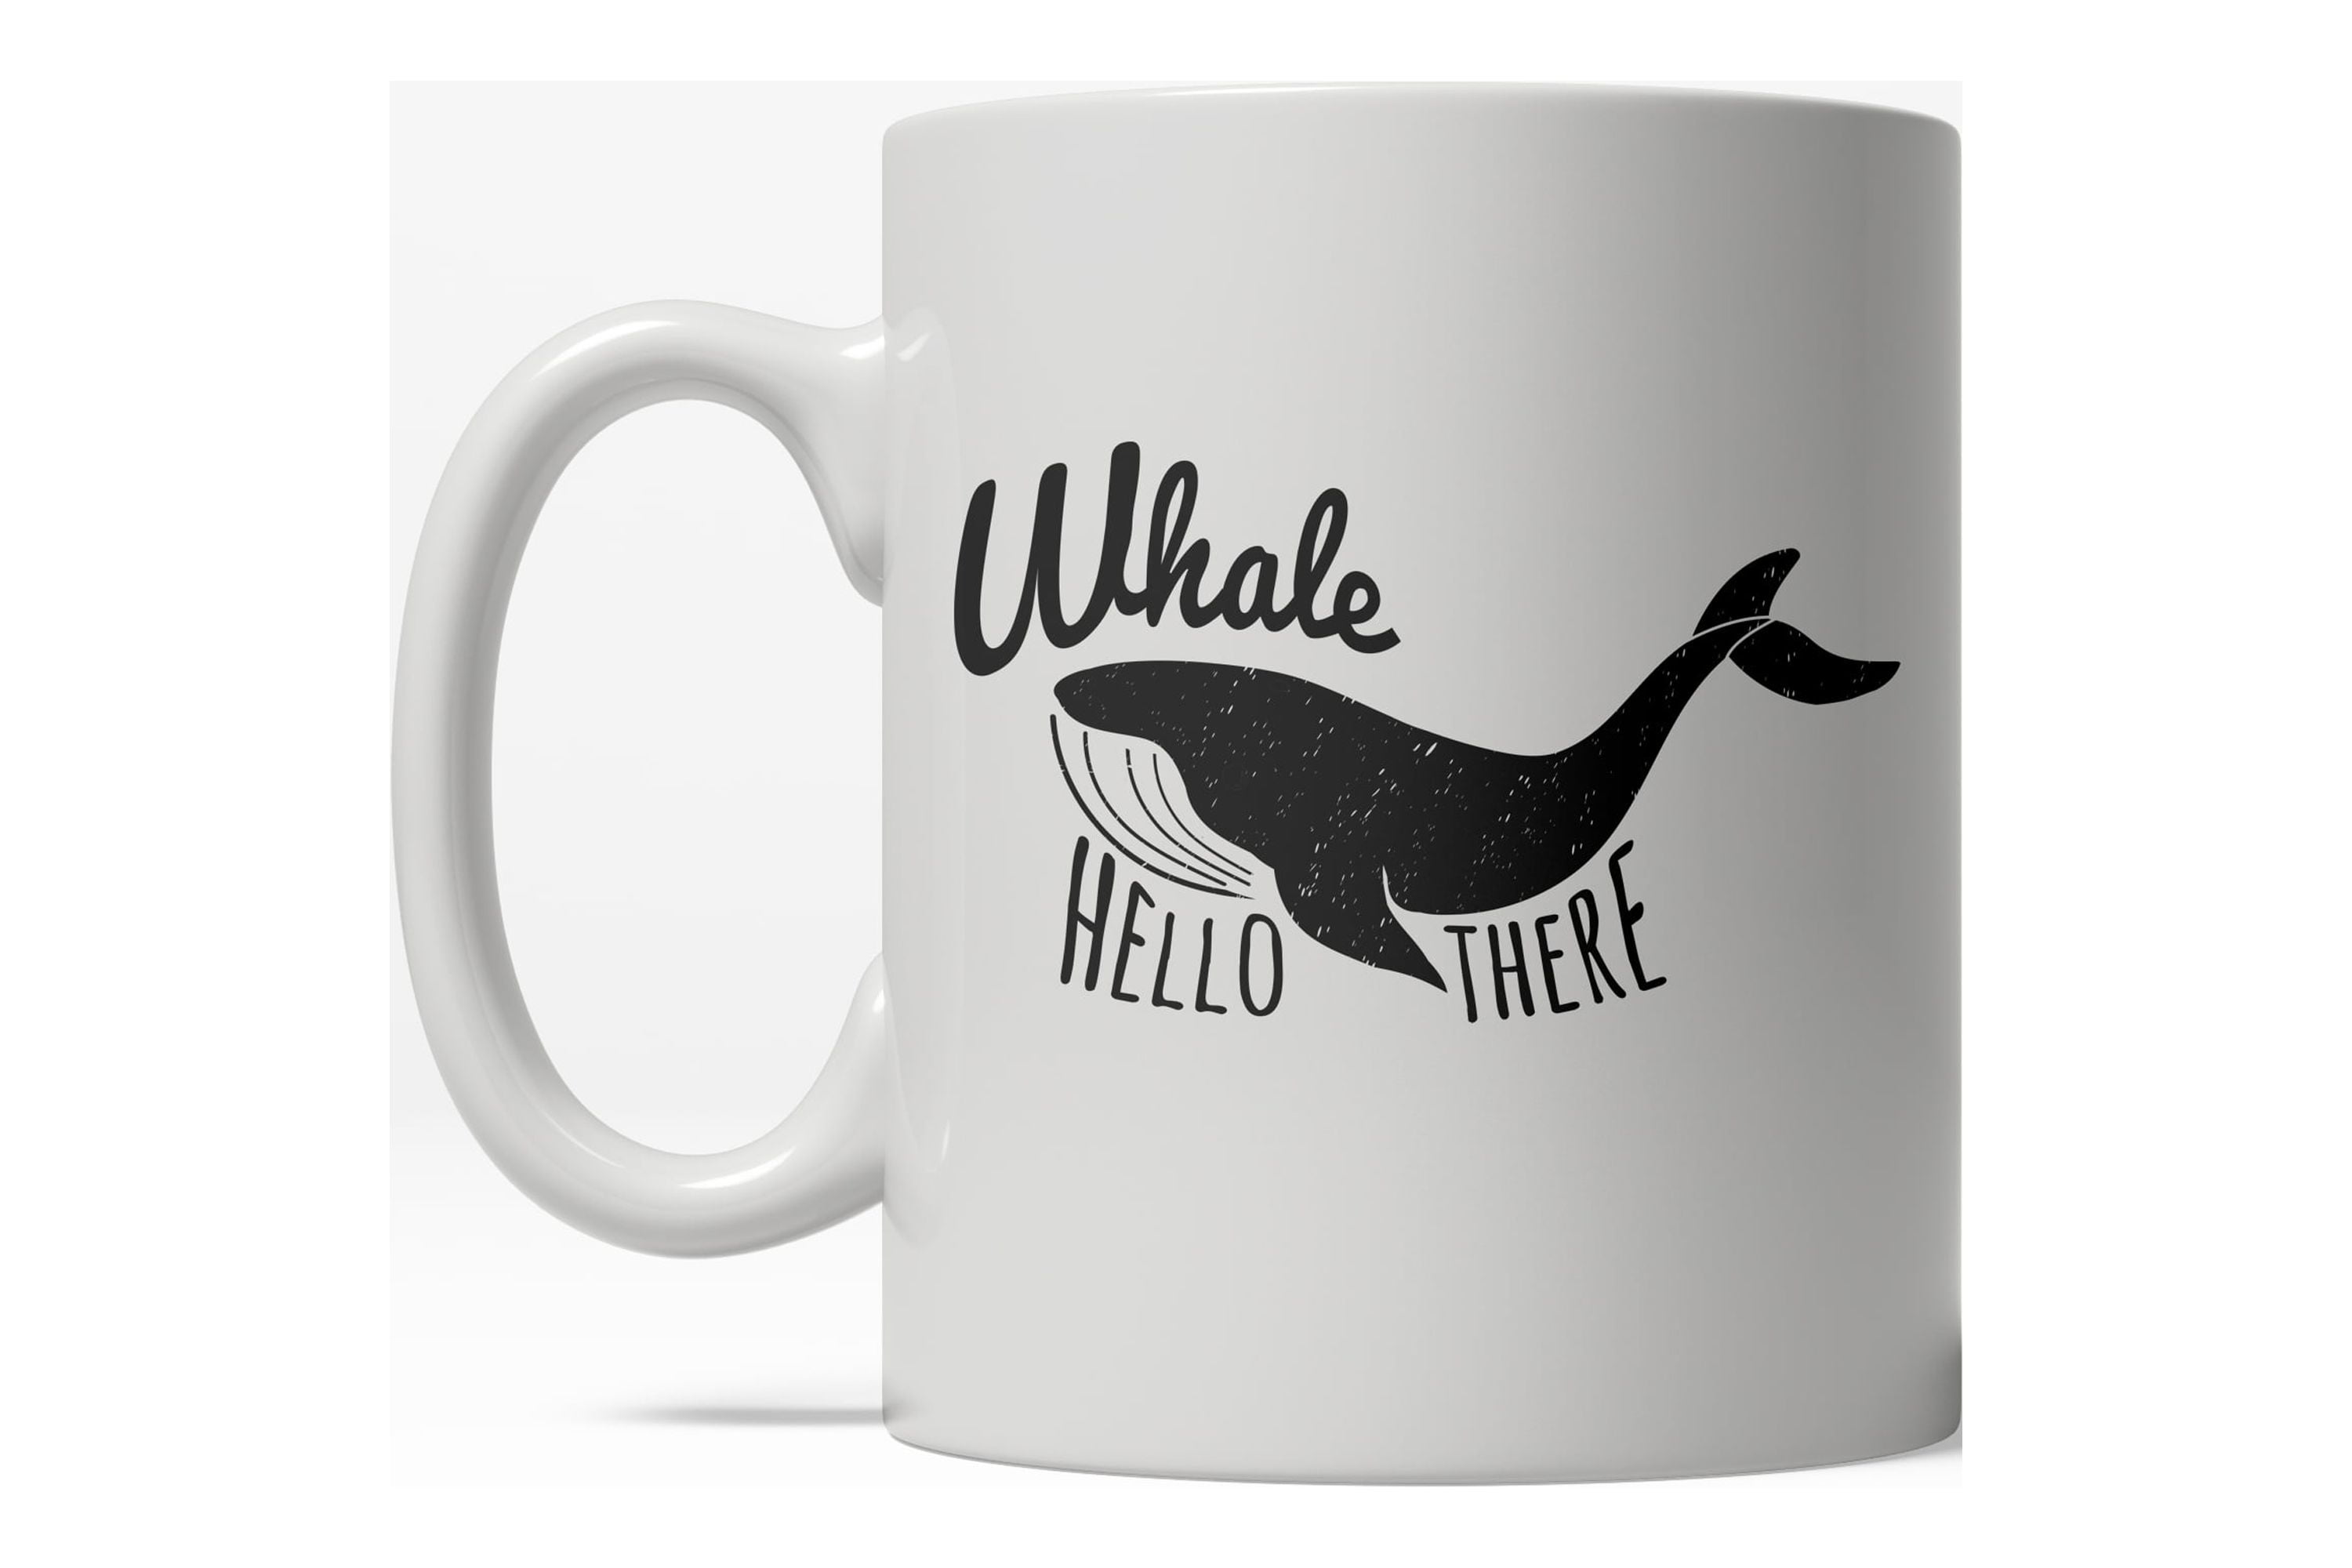 Orca Mug Orca Tea Cup Orca Gift Idea Whale Gift Funny 